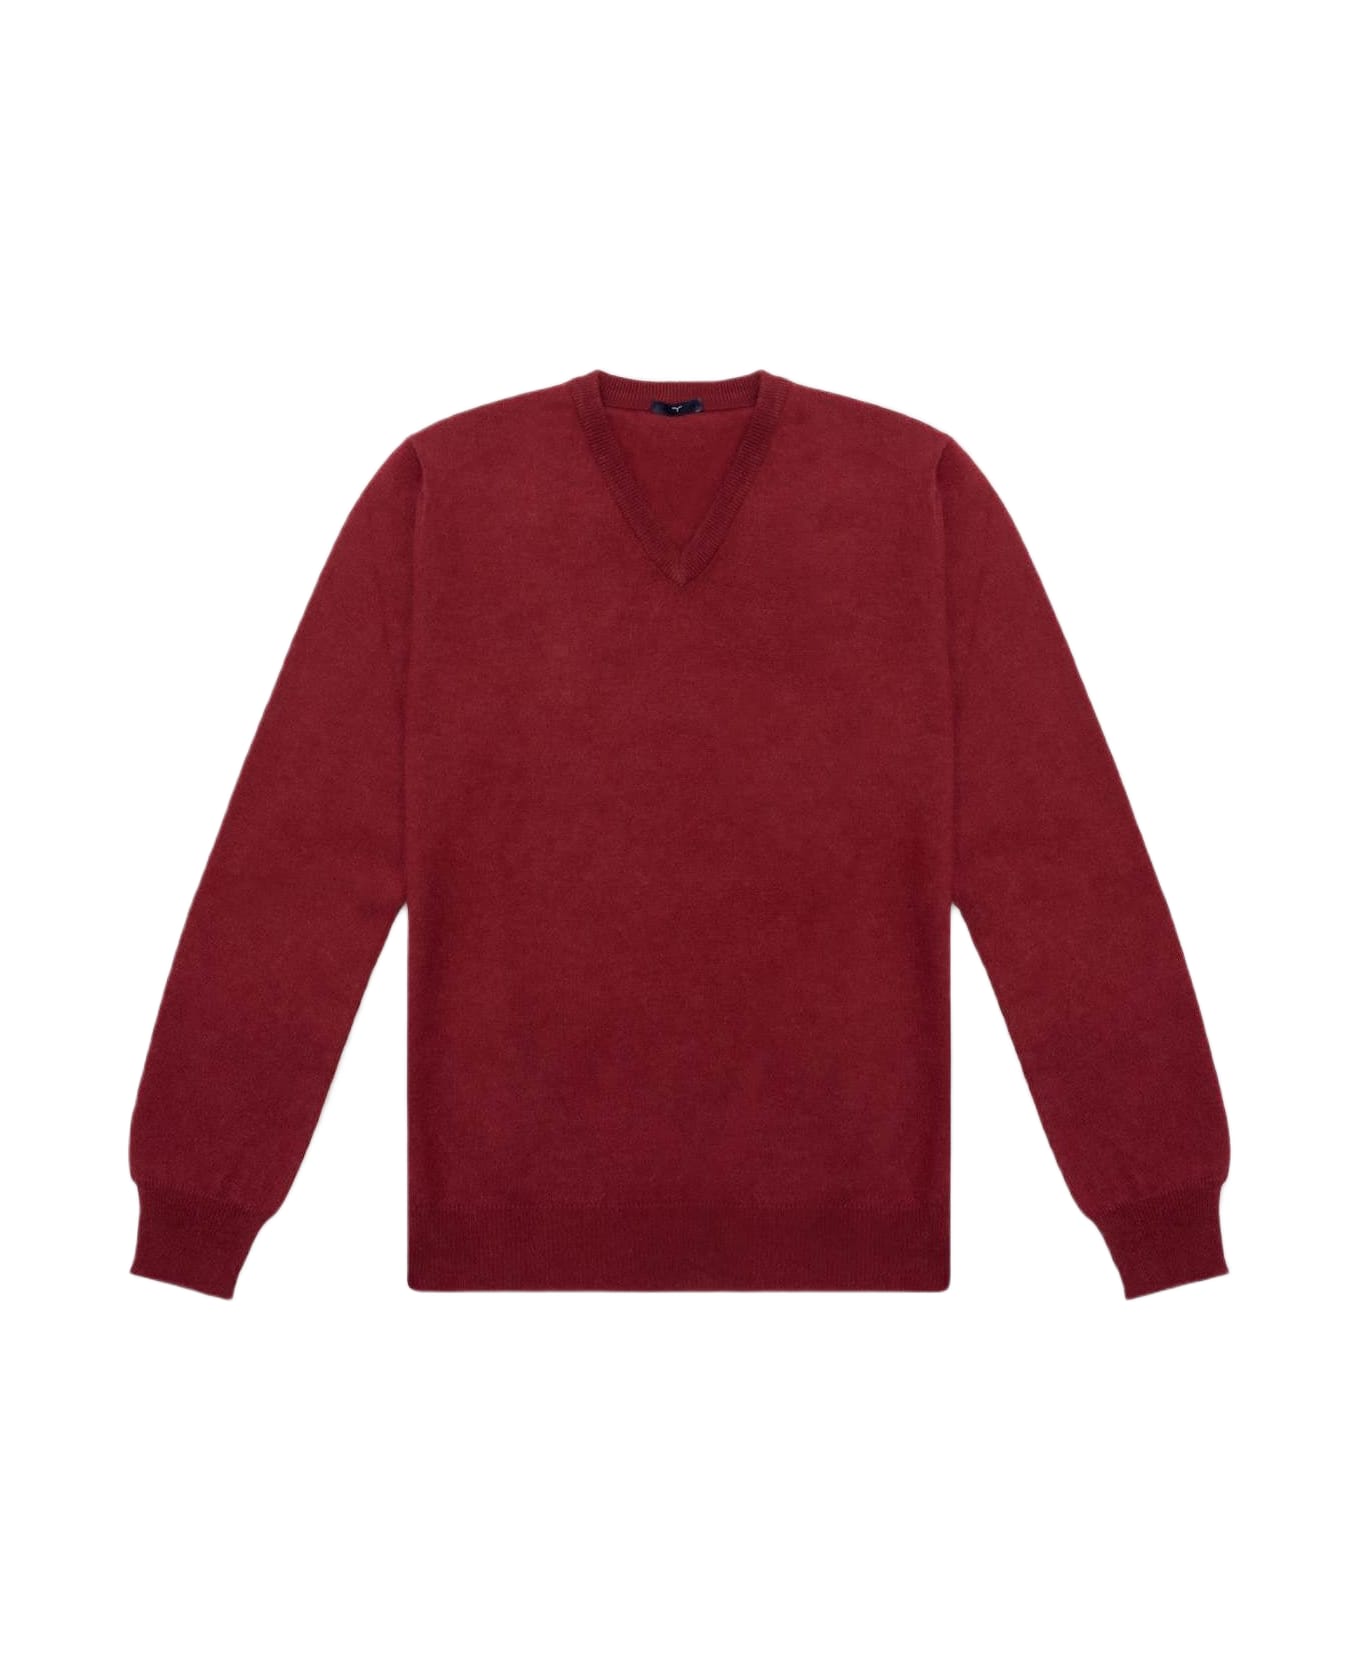 Larusmiani V-neck Sweater Bachelor Sweater - Red ニットウェア